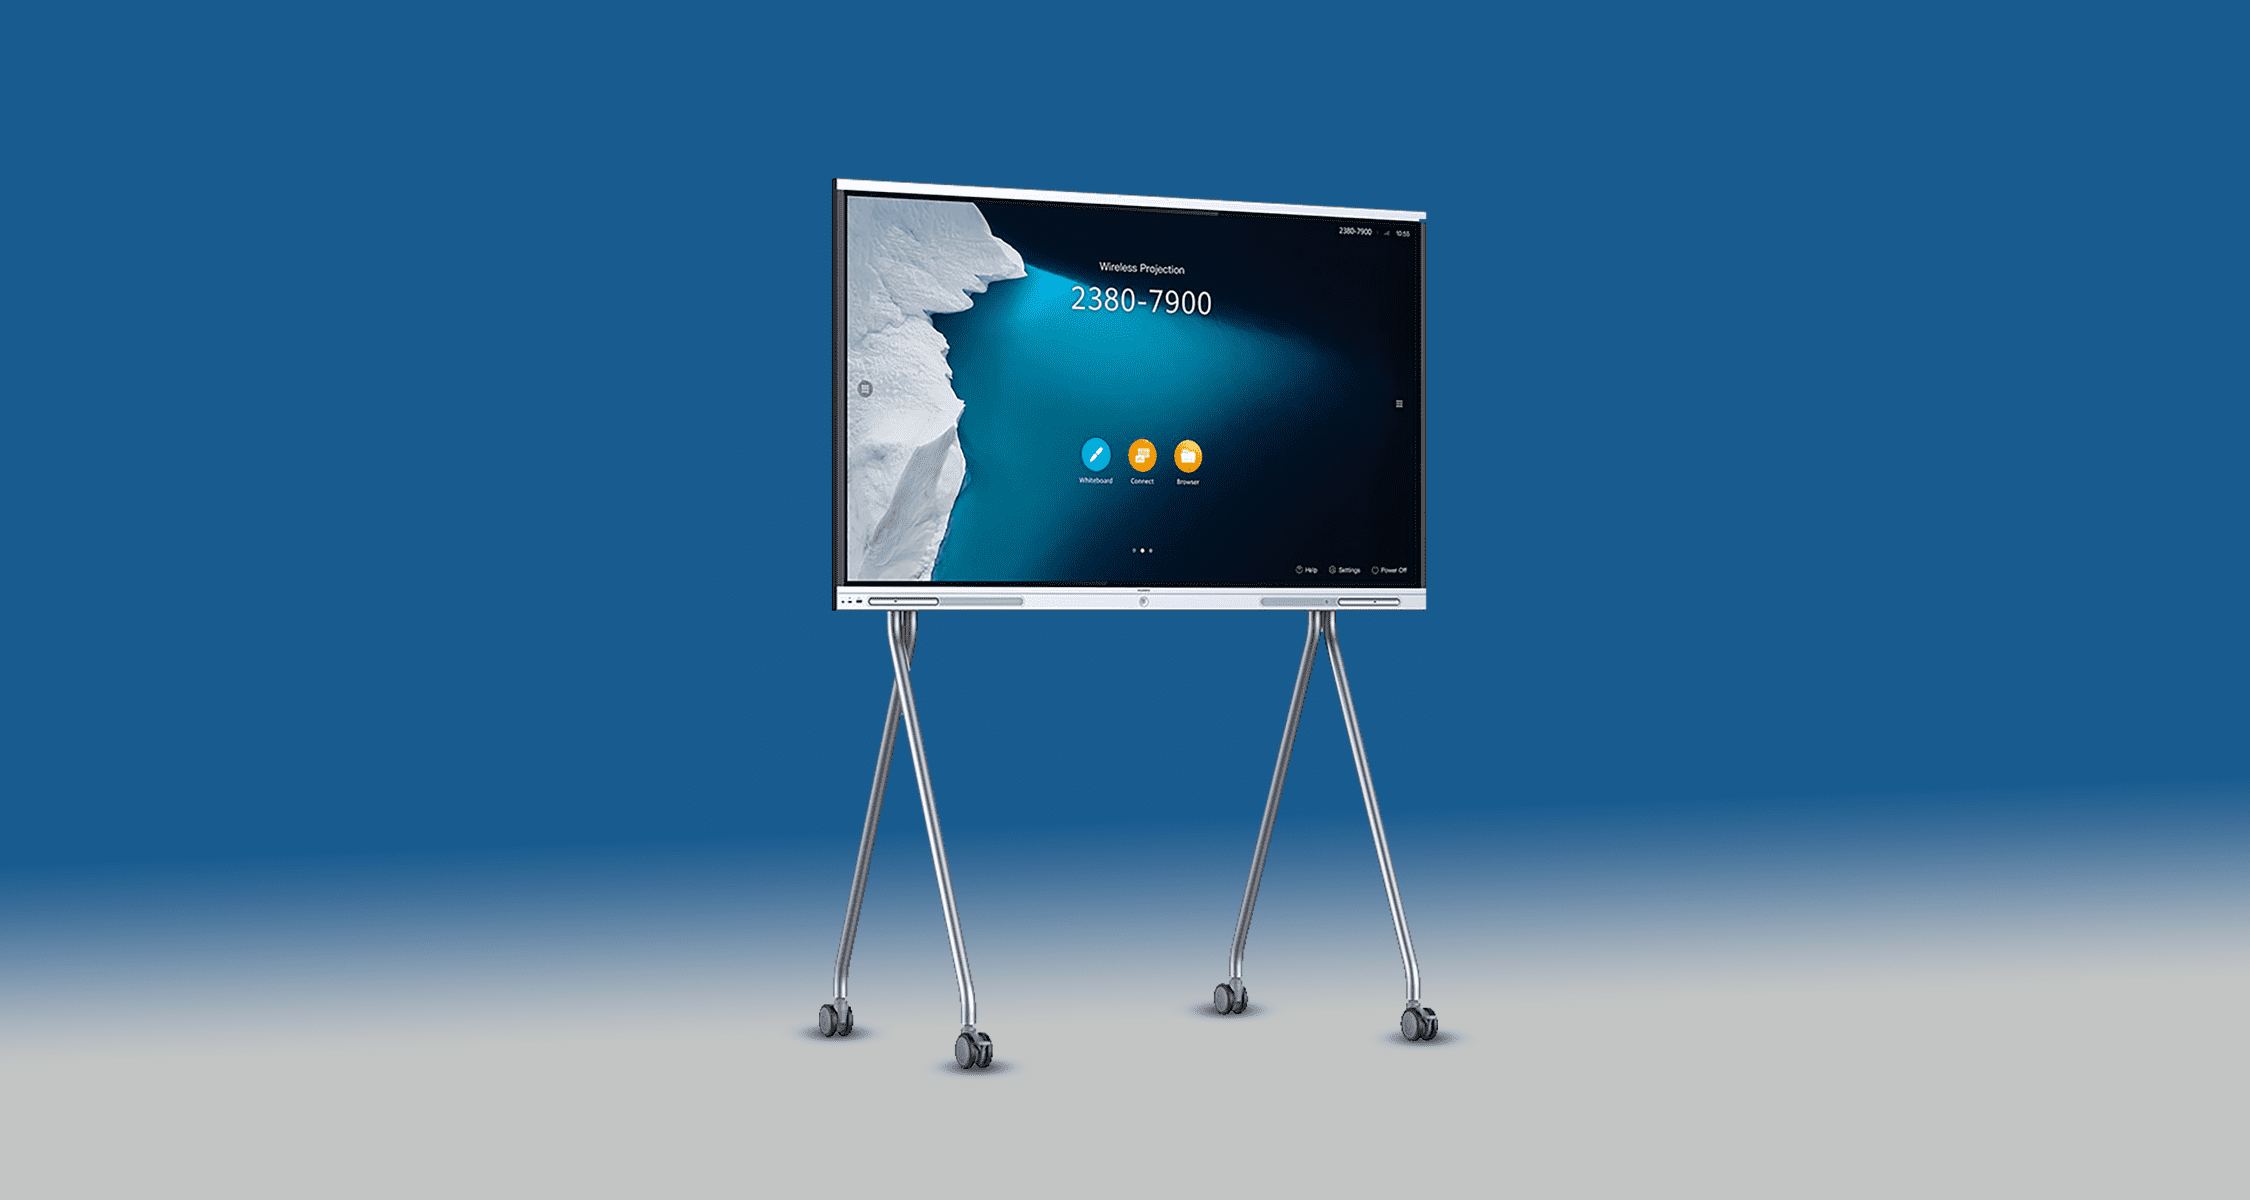 Lavagna digitale "IdeaHub Board" di Huawei accesa su sfondo blu color Saidea. Si poggia su due stand da altrettante gambe ciascuno con rotelle. Proiettato c'è la scritta "Wirless projection 2380-7900" su uno sfondo con un mare ghiacciato e un iceberg.